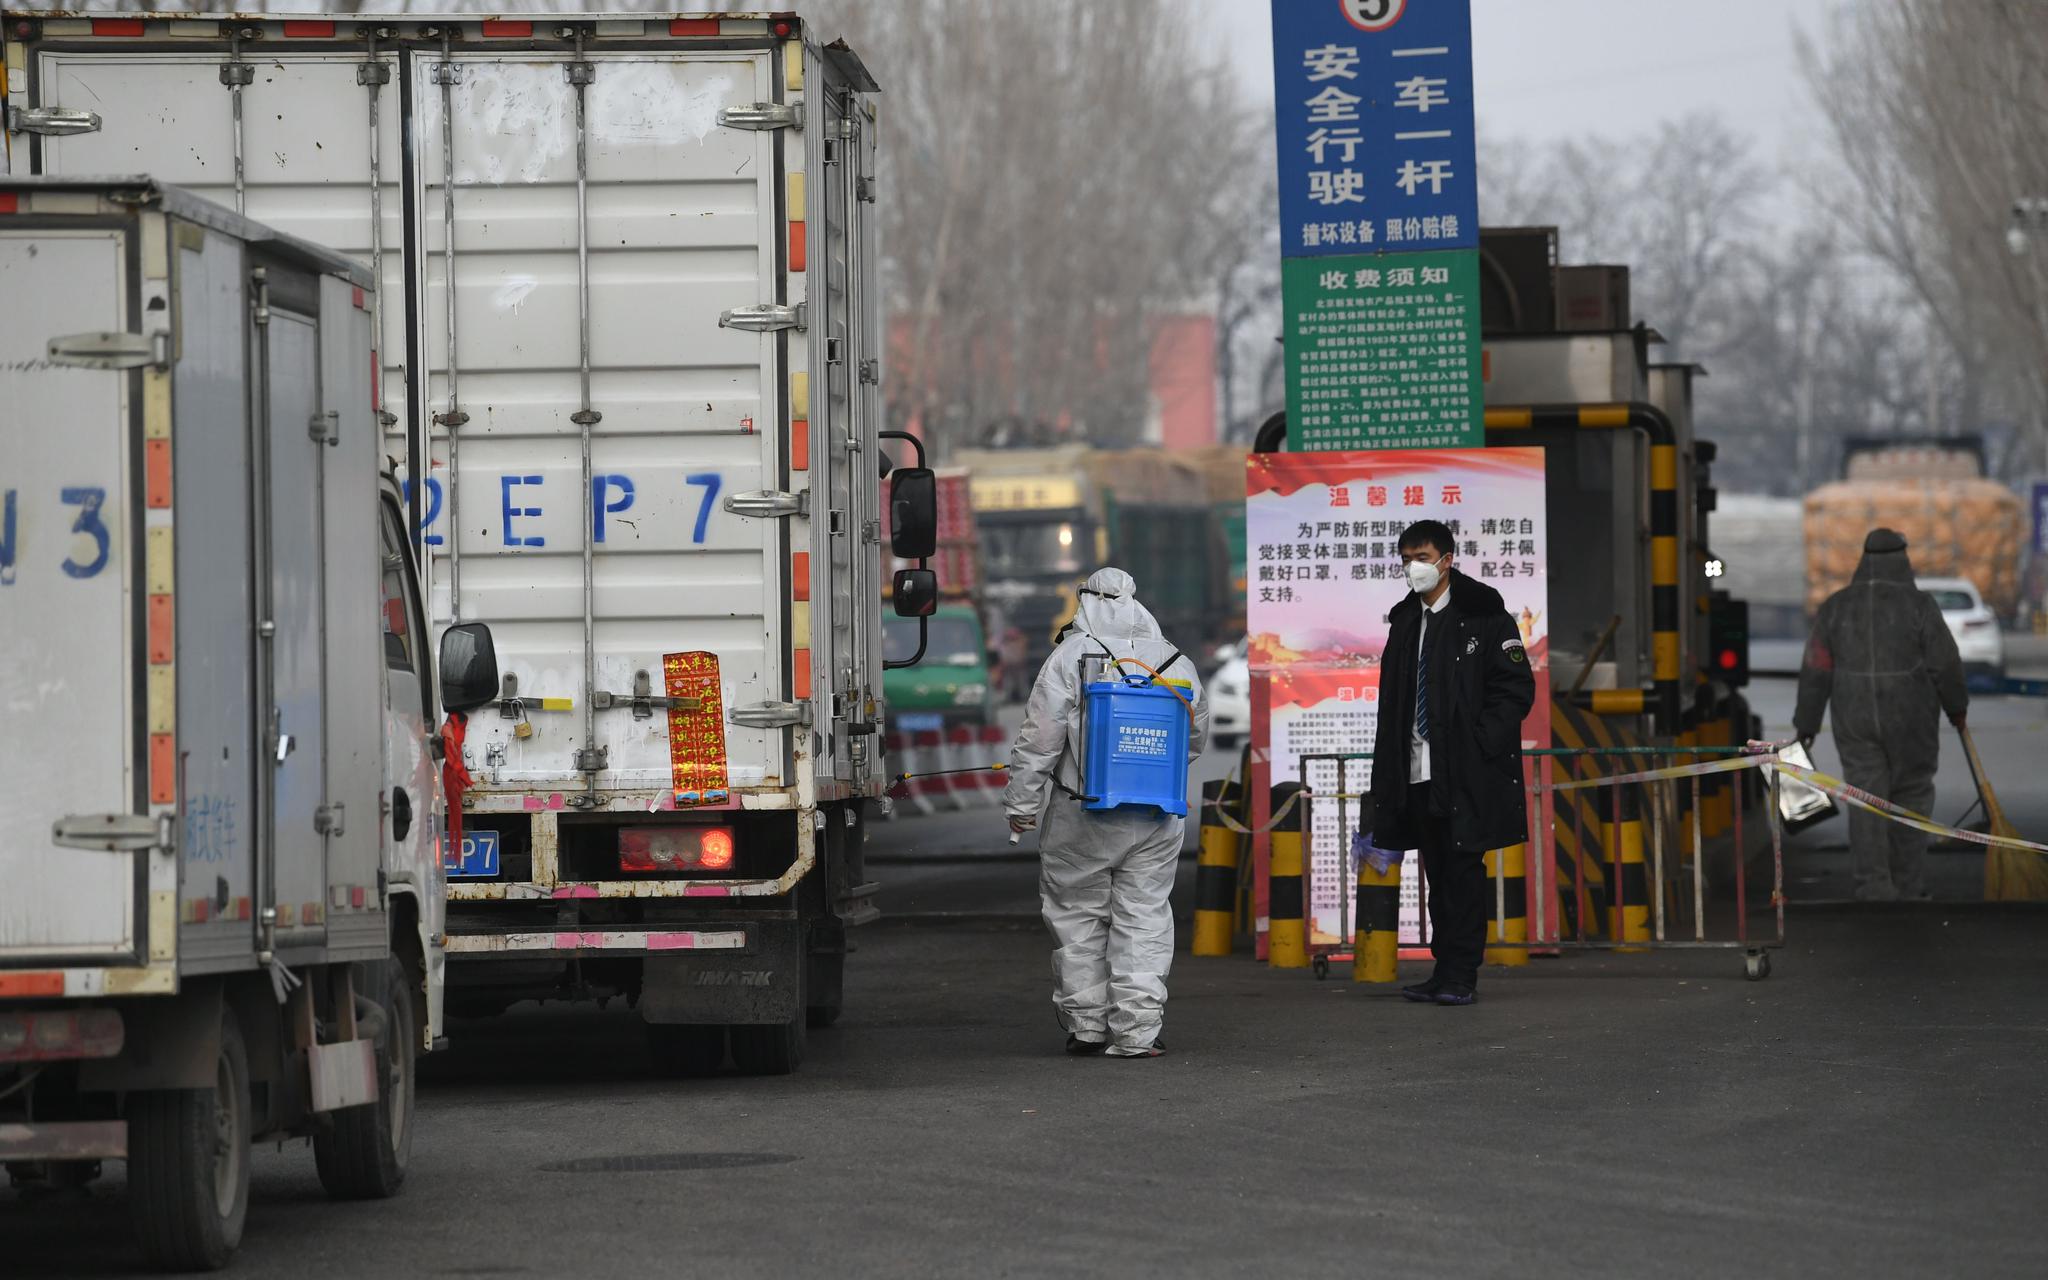 防疫人员在货车轮子上喷洒消毒液。新京报记者 王颖 摄